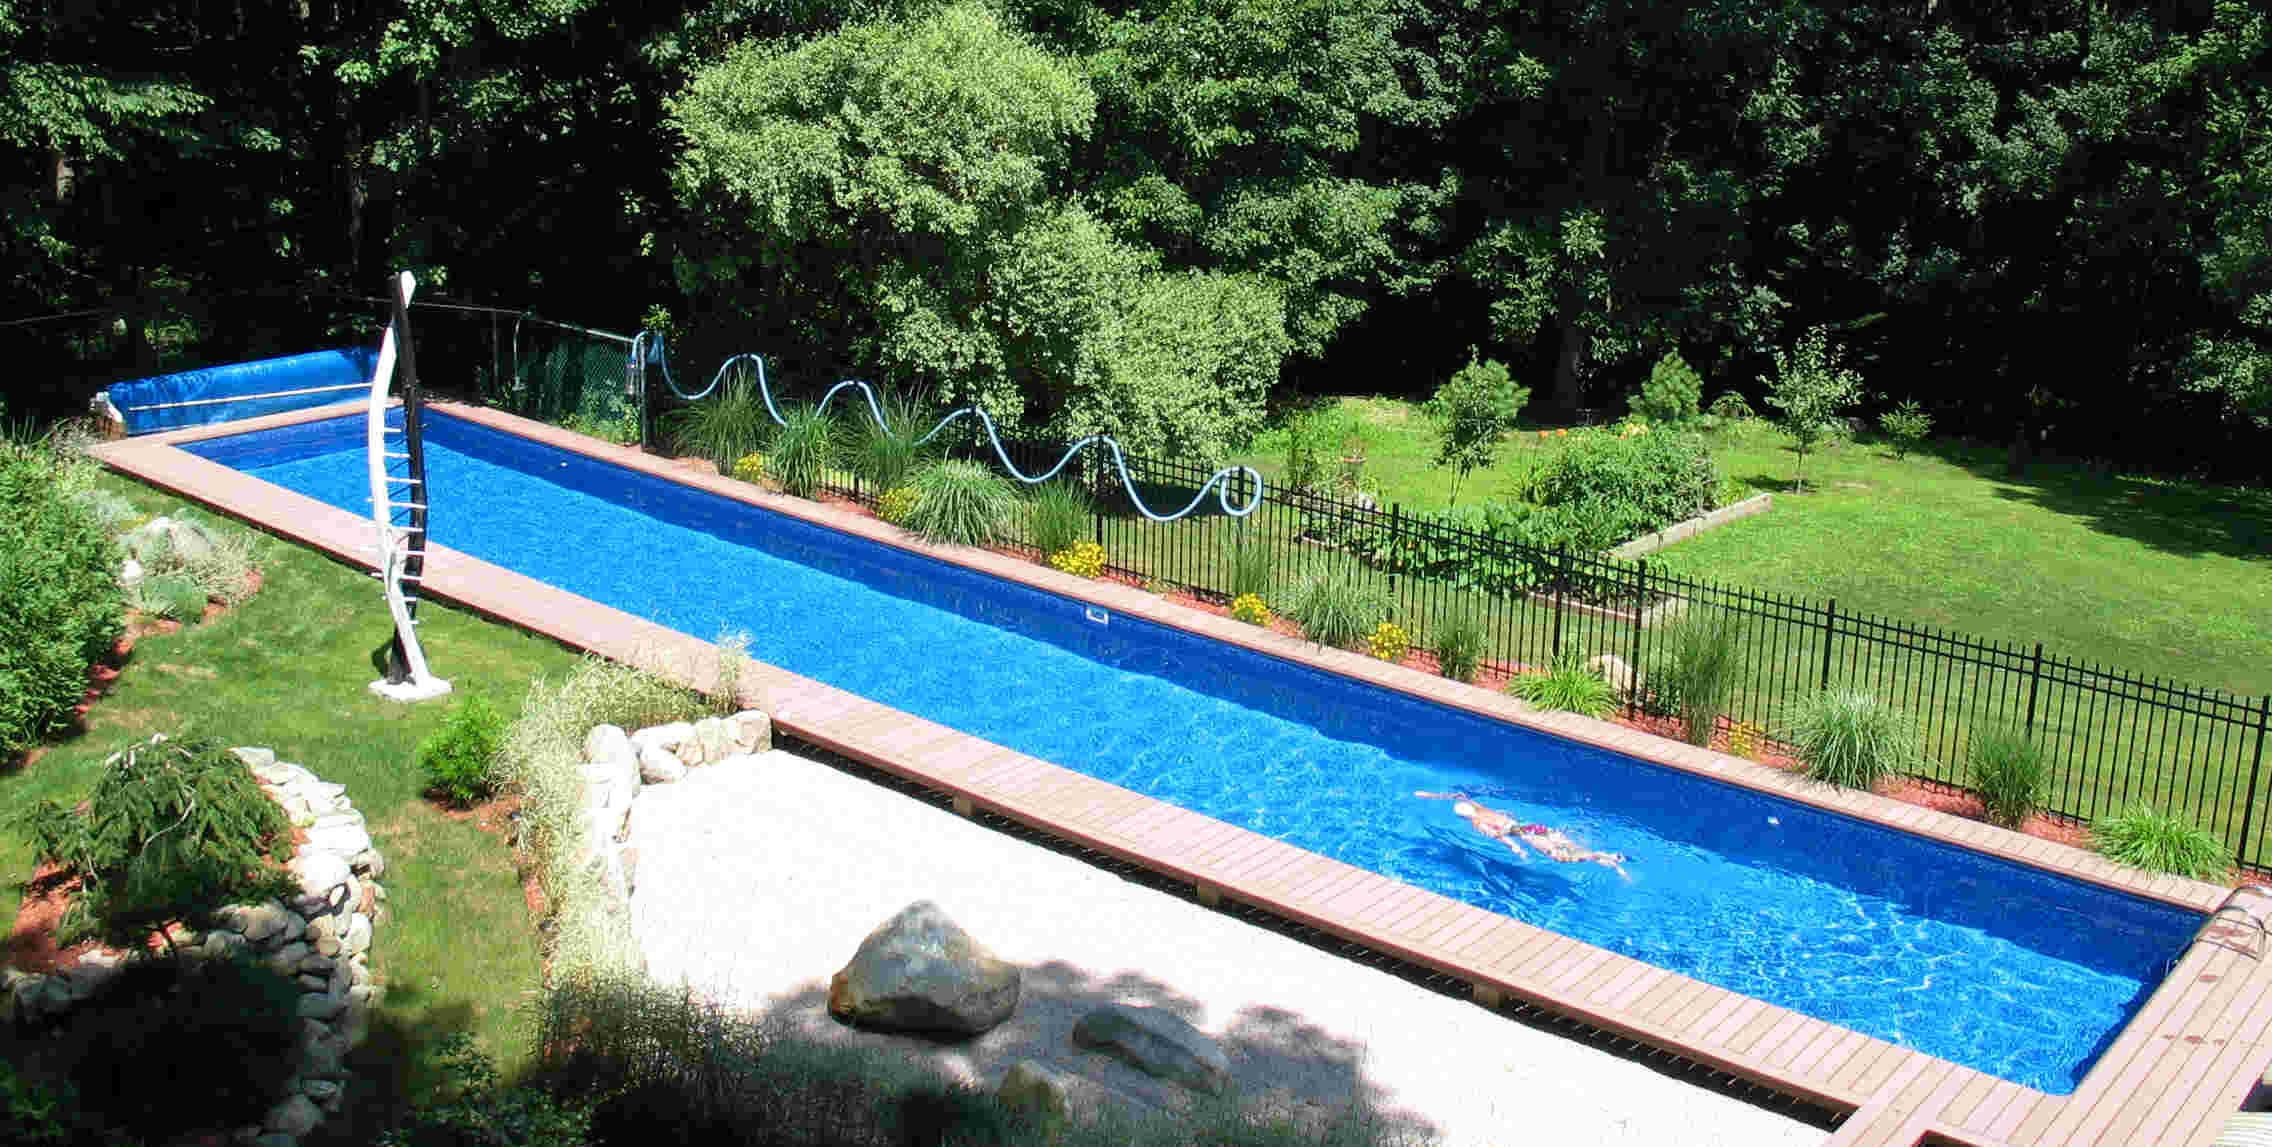 Best ideas about Homemade Inground Pool
. Save or Pin DIY Inground Swimming Pool Now.